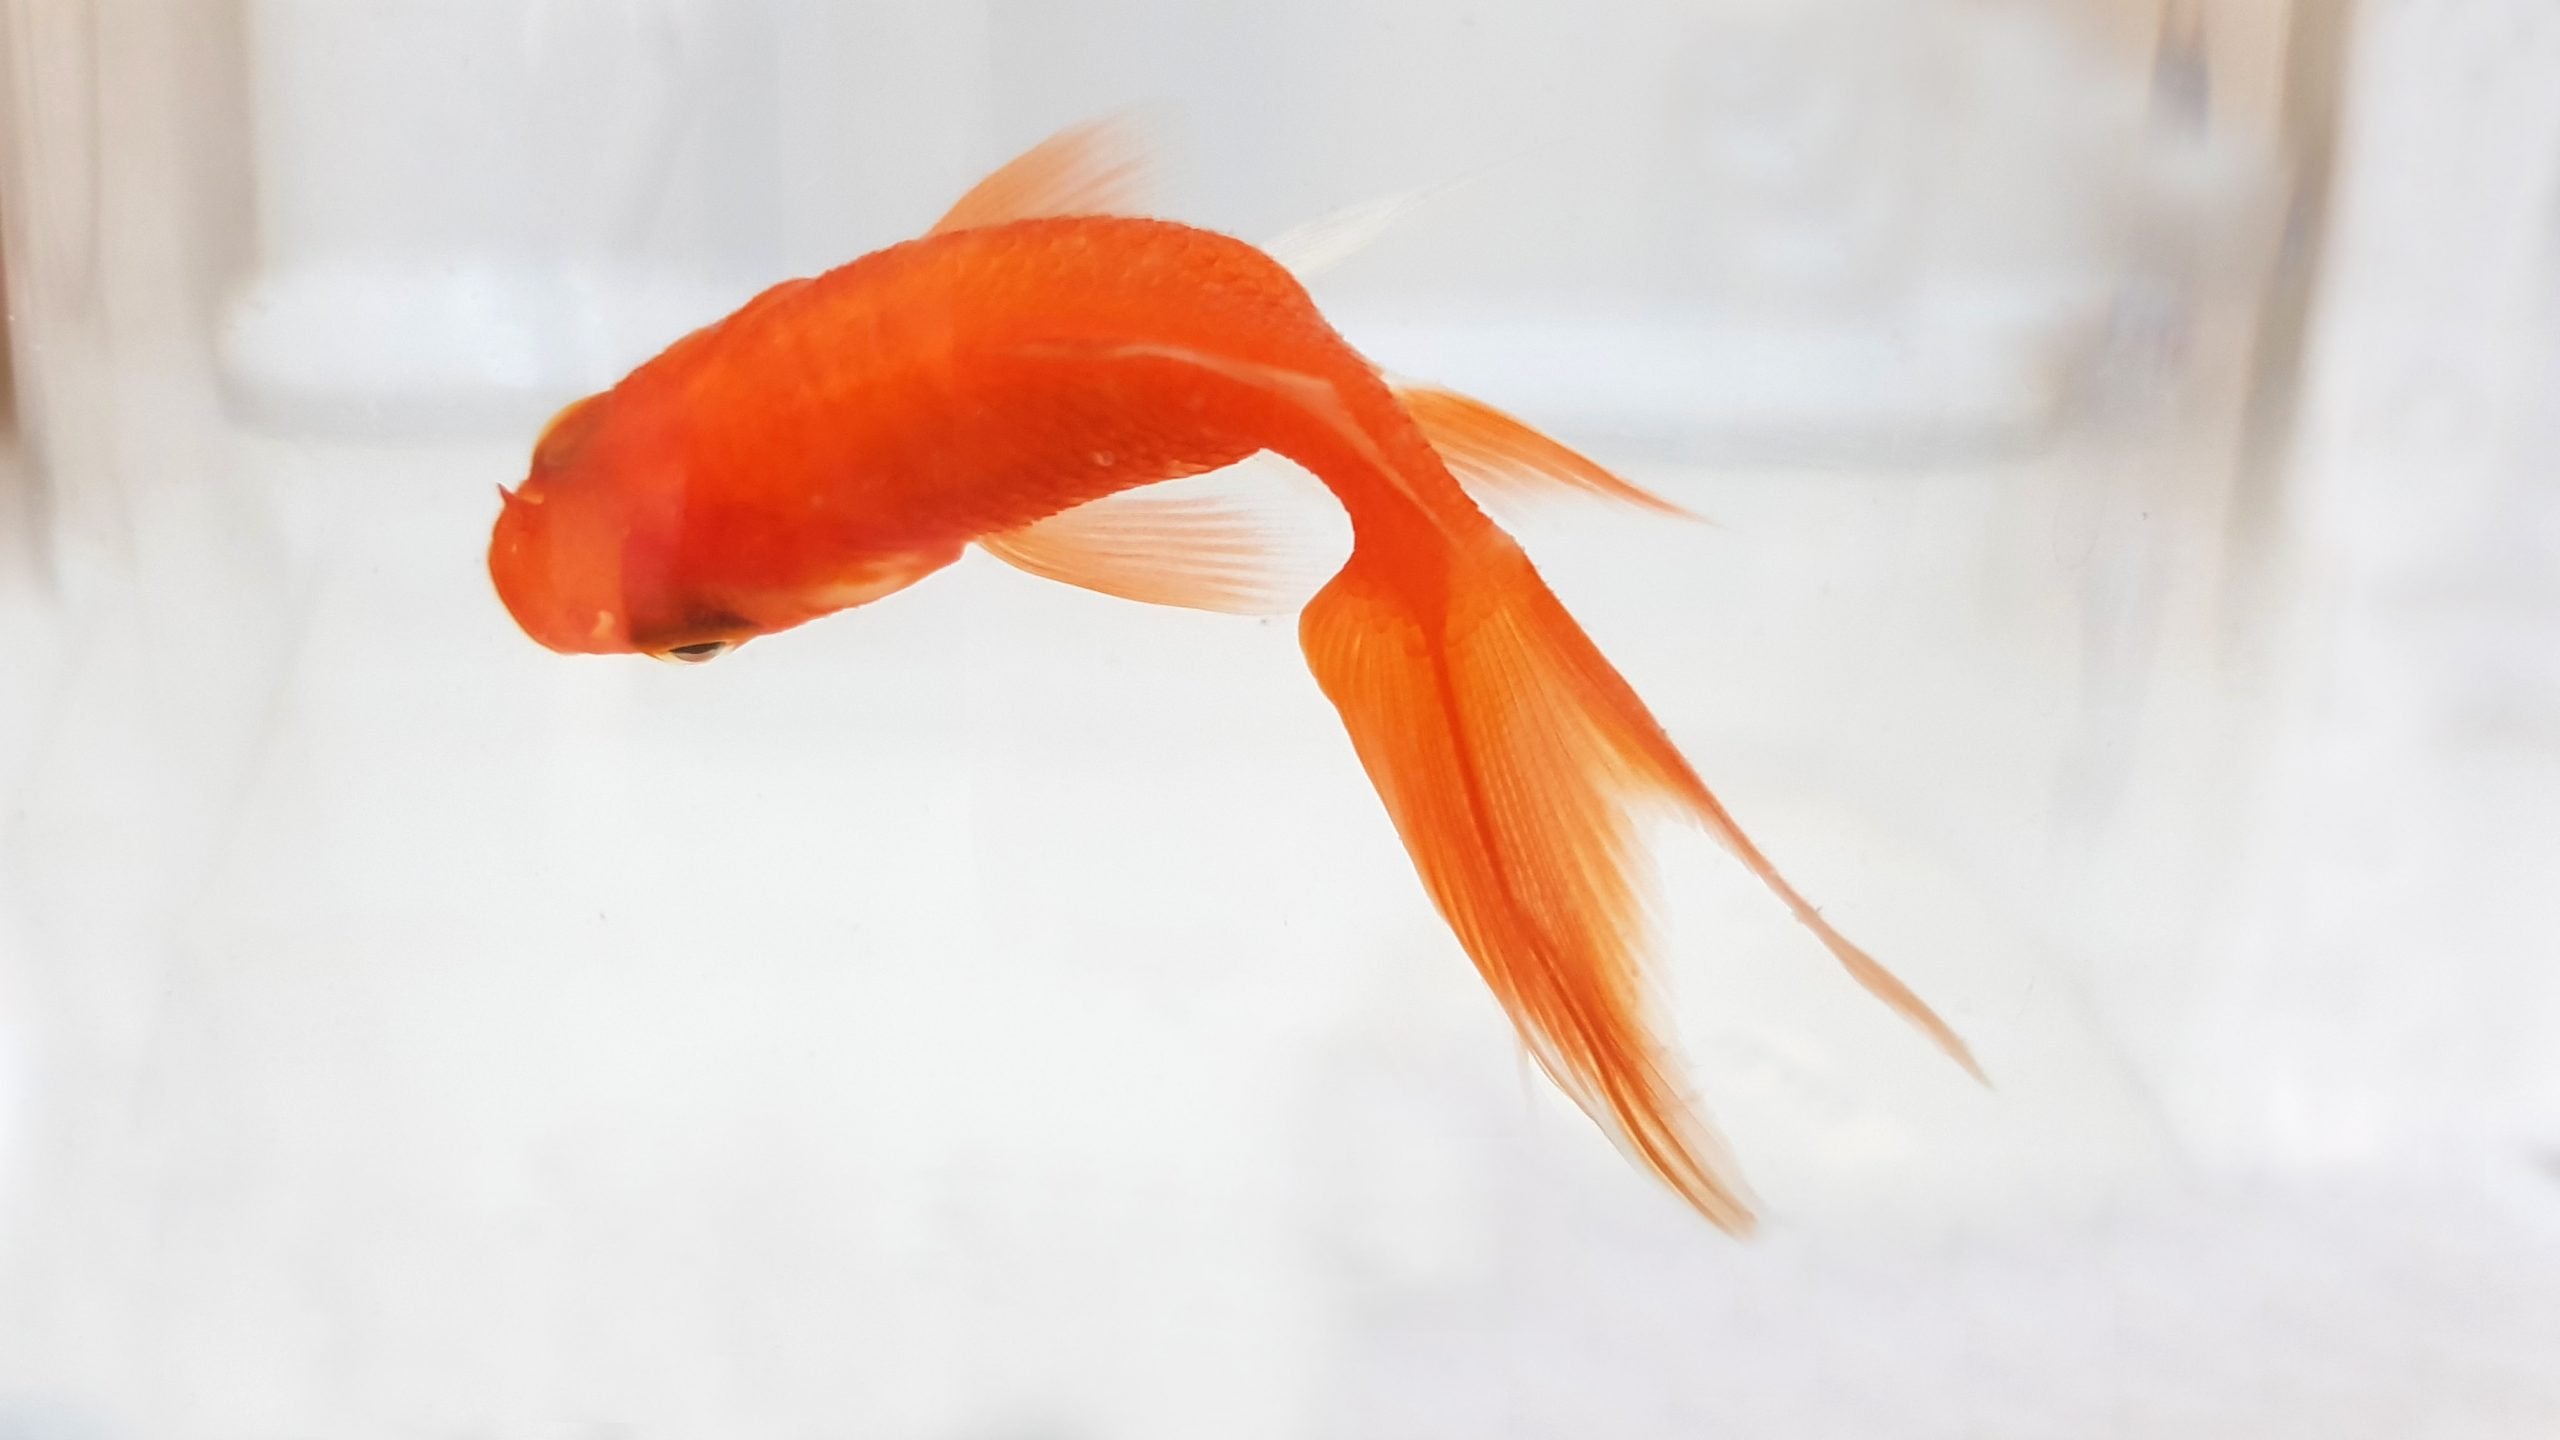 Multa per i pesci rossi in una boccia, l’associazione AgireOra: “Voi vivreste in una gabbia di vetro?”